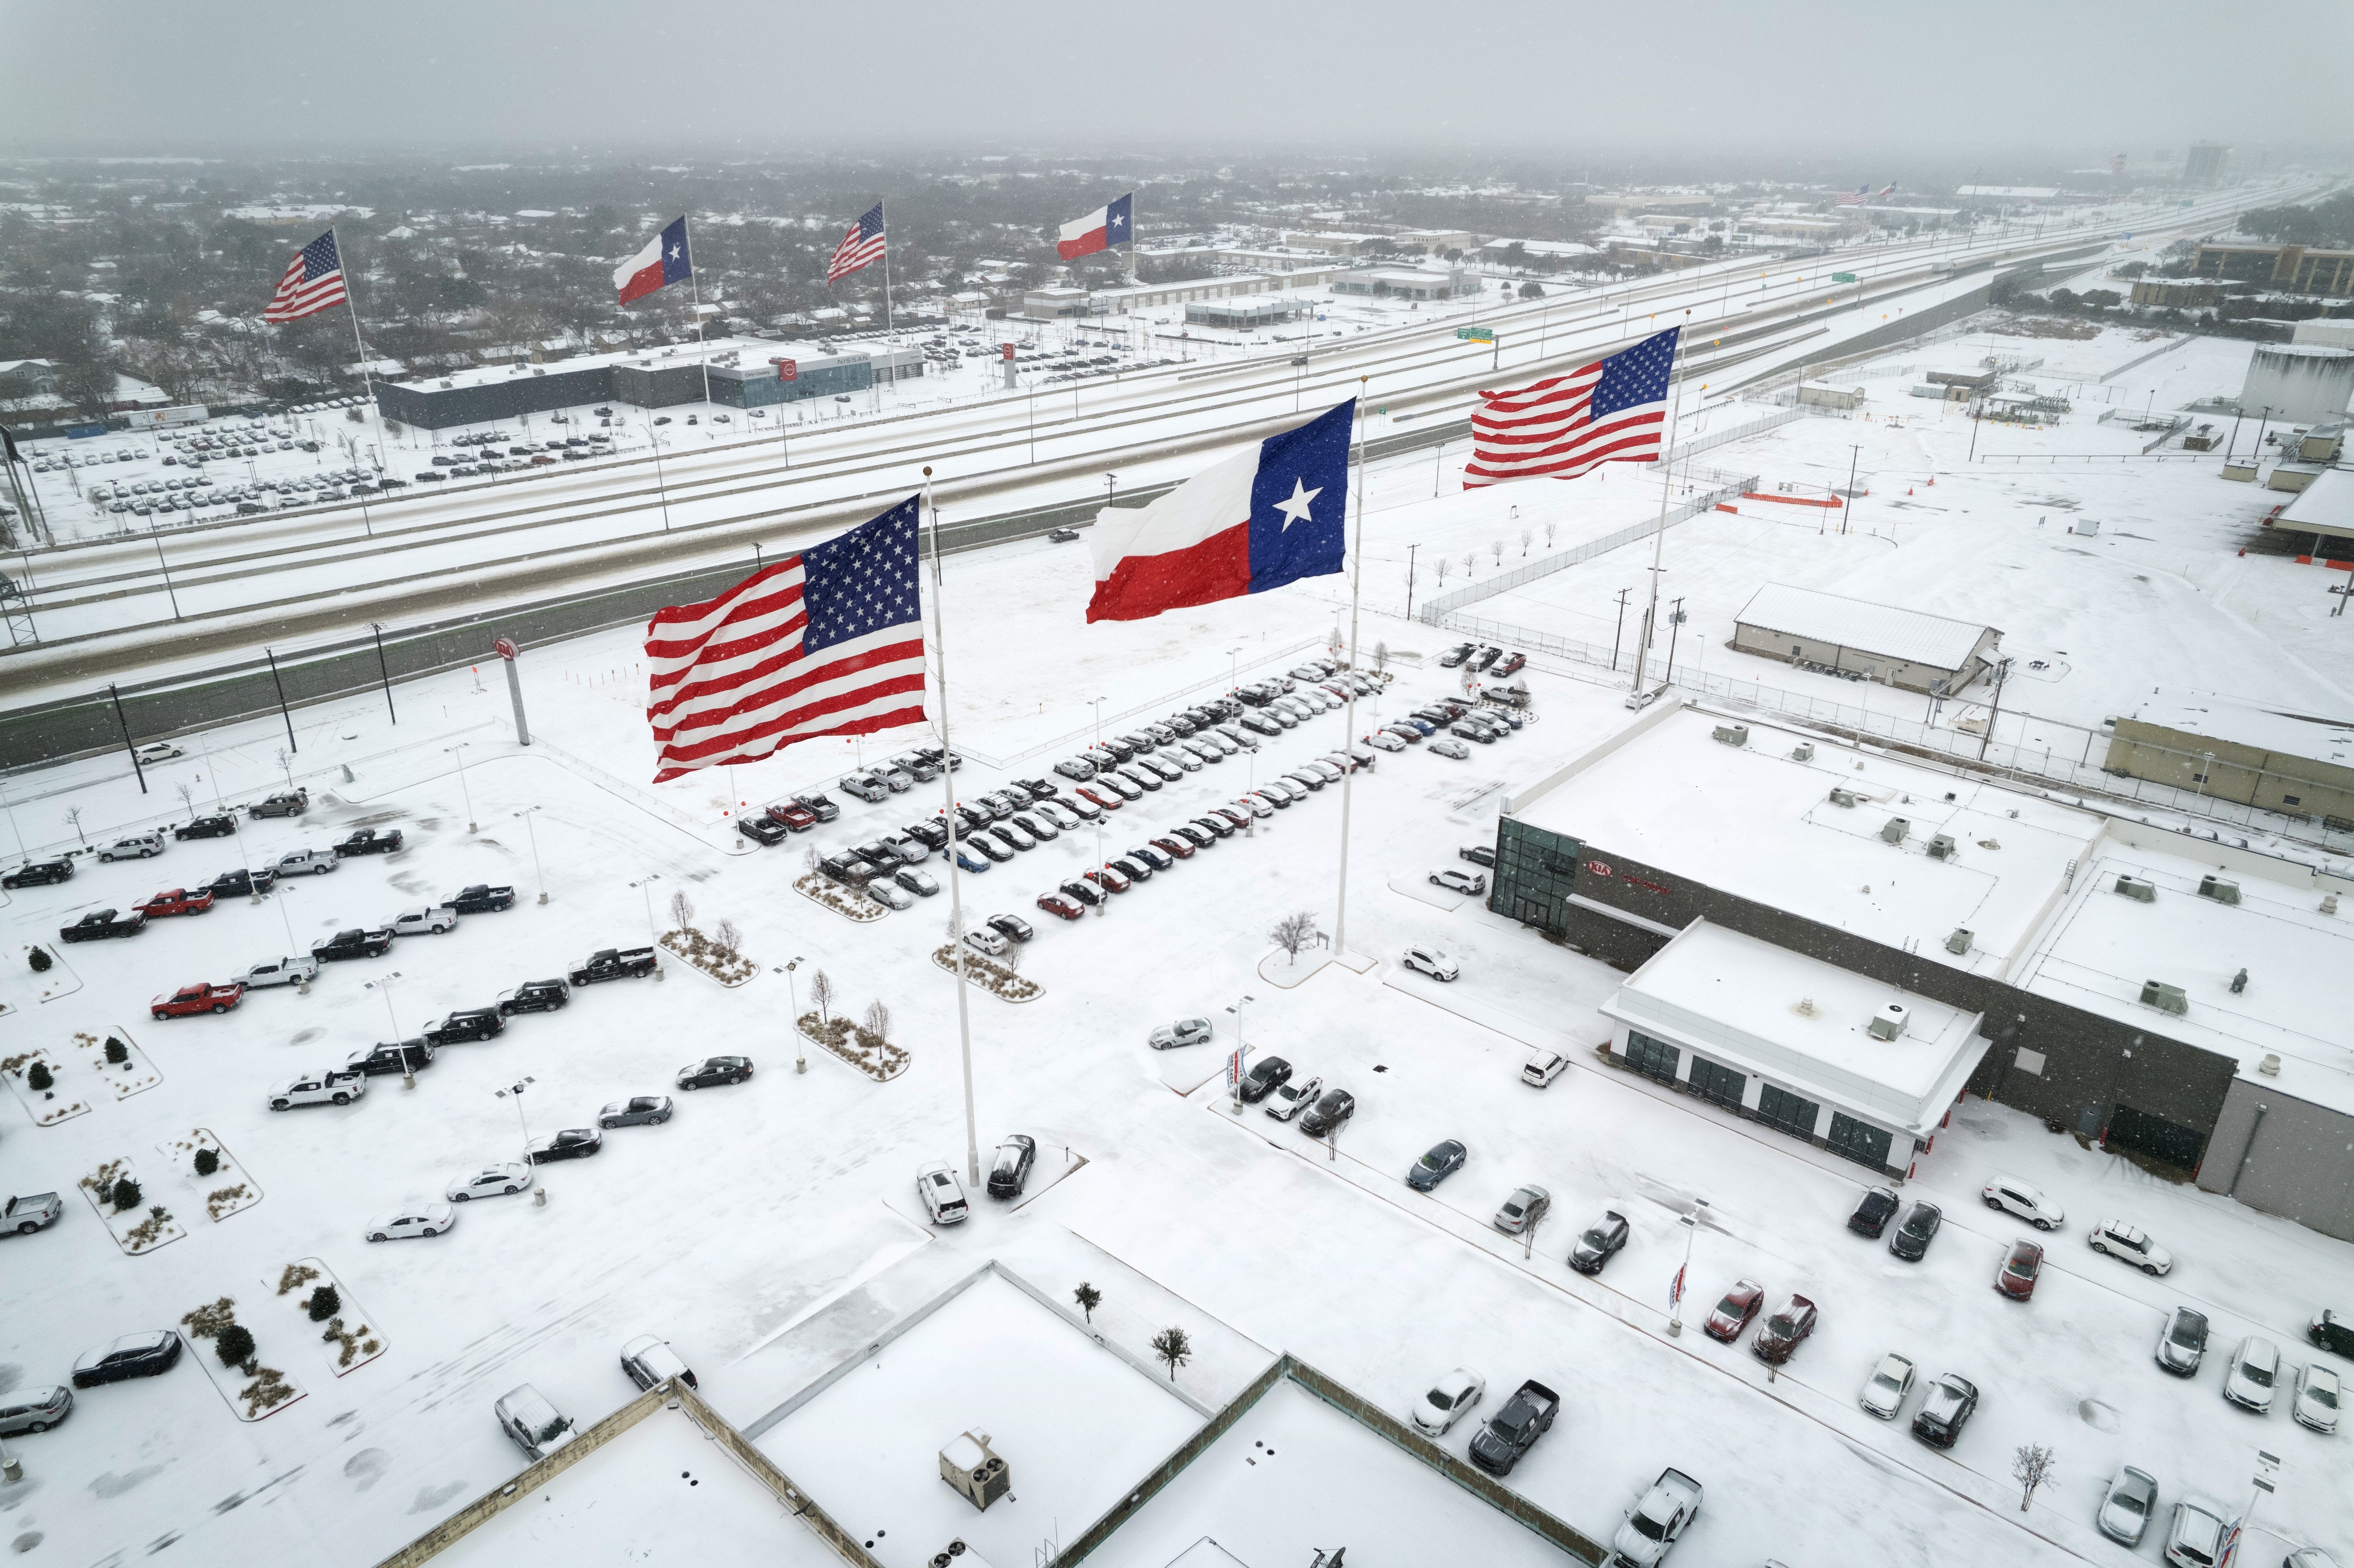 El tráfico avanza a través de la nieve el 3 de febrero de 2022 en Irving, Texas, mientras azota la tormenta invernal Landon